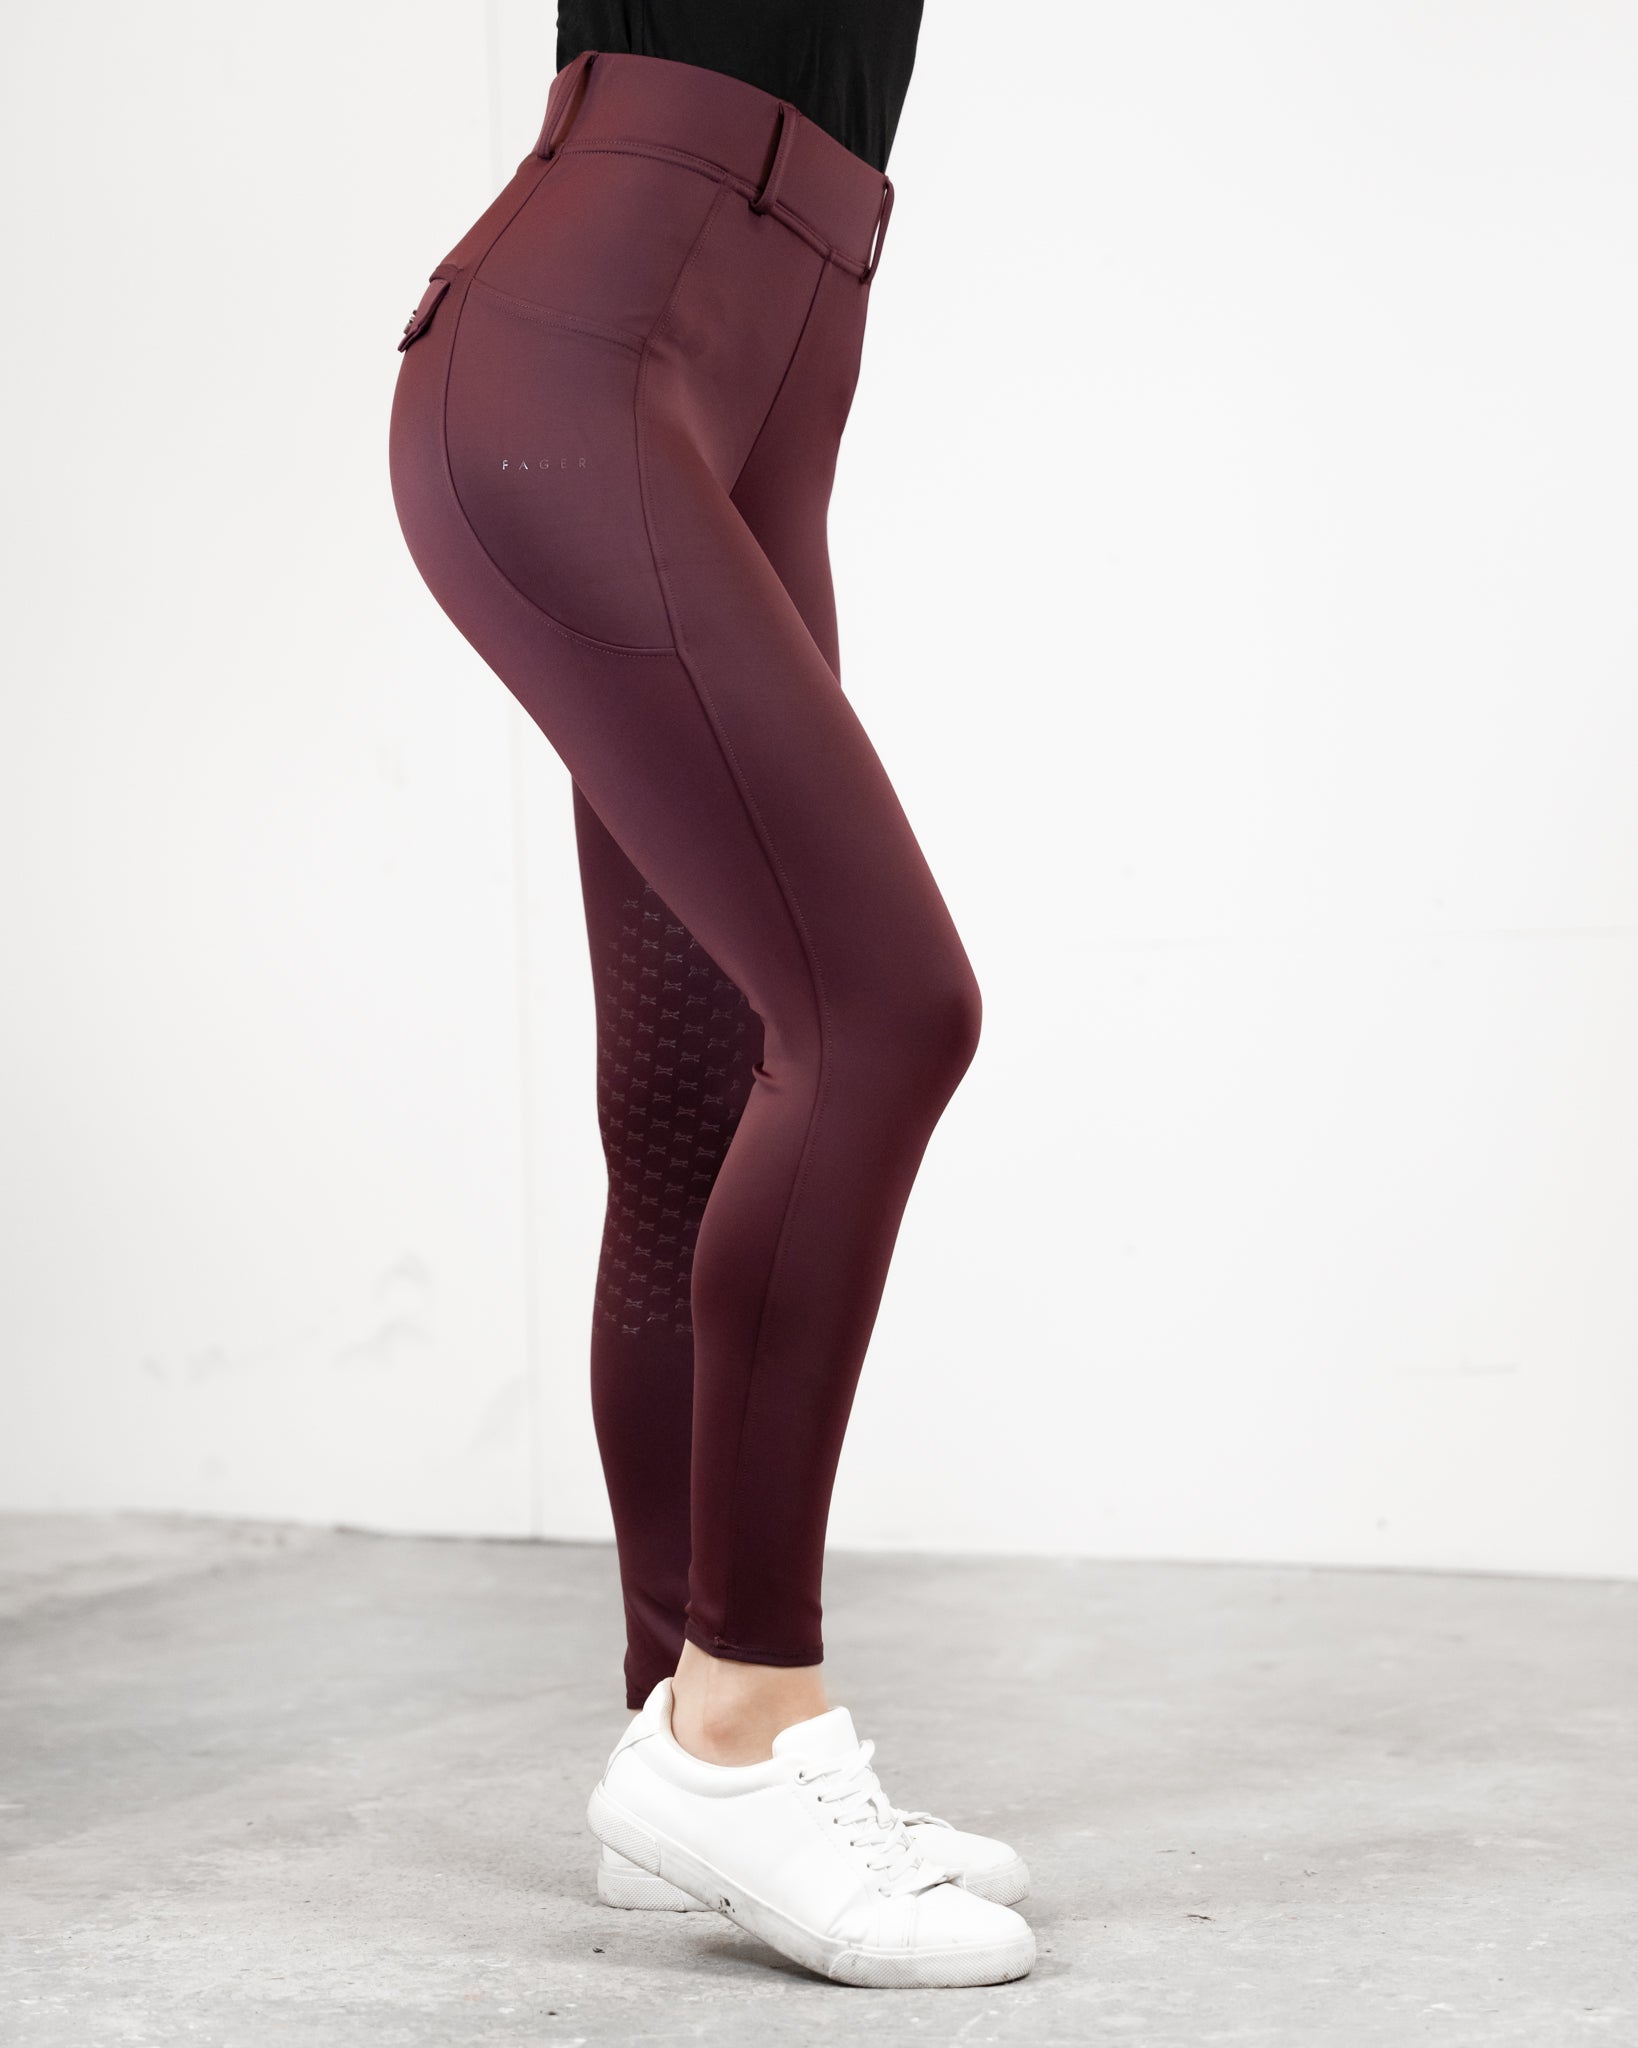 Clothing - adidas by Stella McCartney 7/8 Yoga Leggings - Burgundy | adidas  Israel